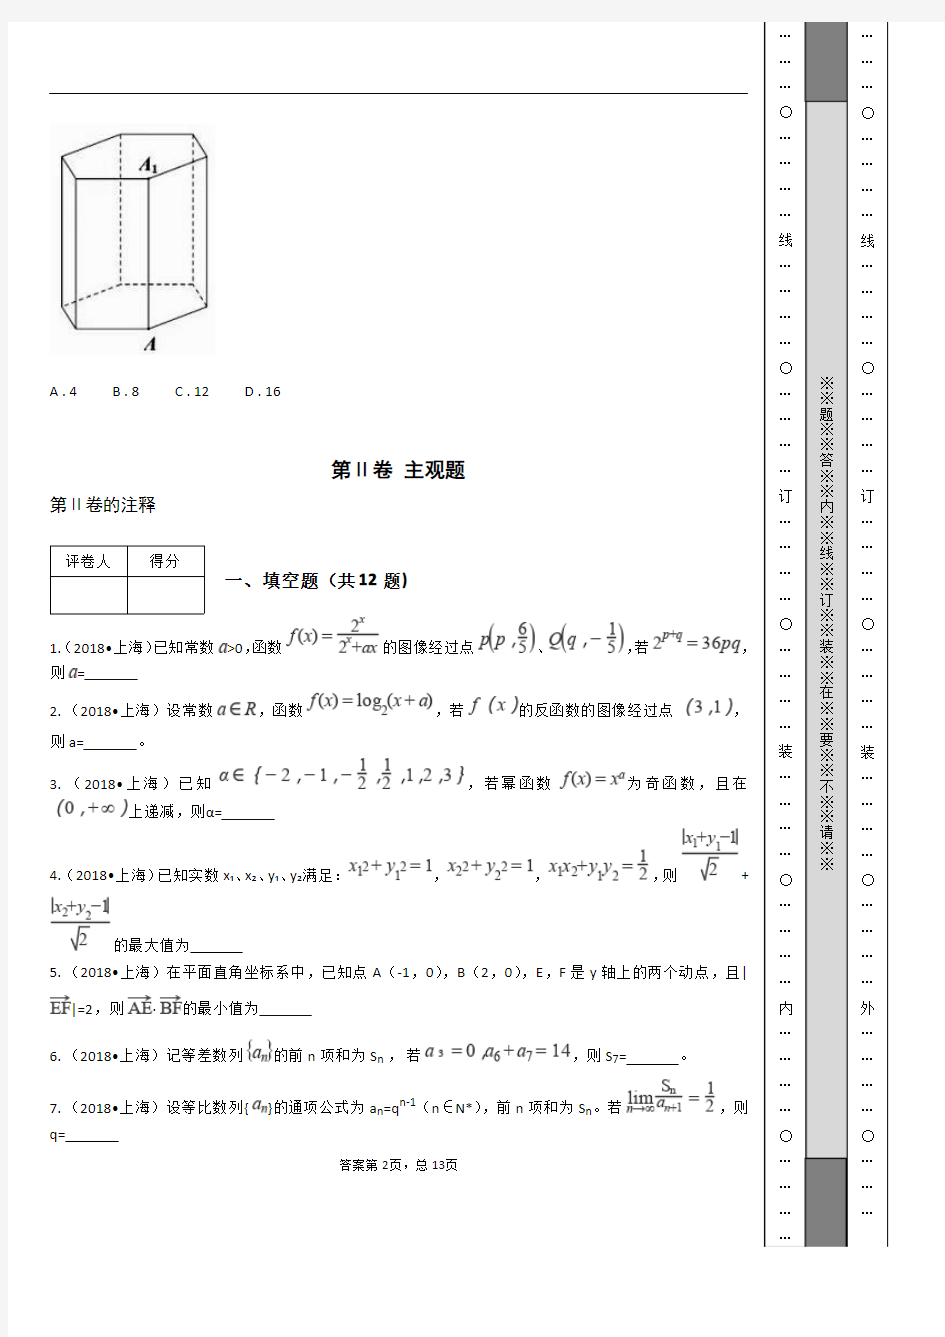 2018年高考数学真题试卷(上海卷)